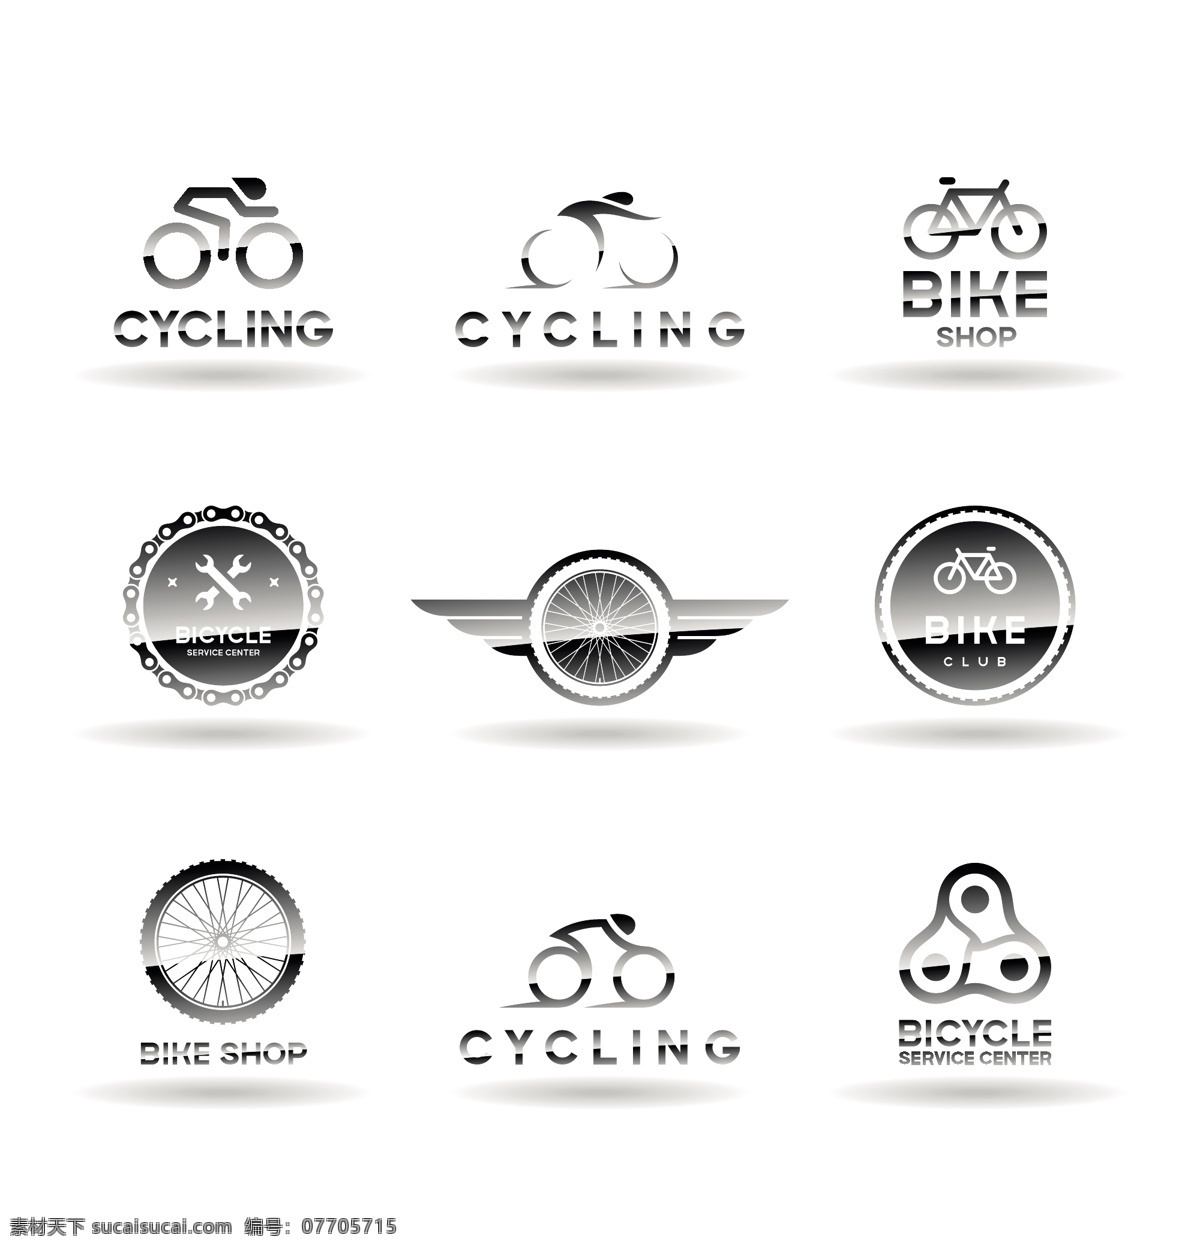 自行车 主题 logo logo设计 商标 公司标志 产品标识 标志图标 矢量素材 白色